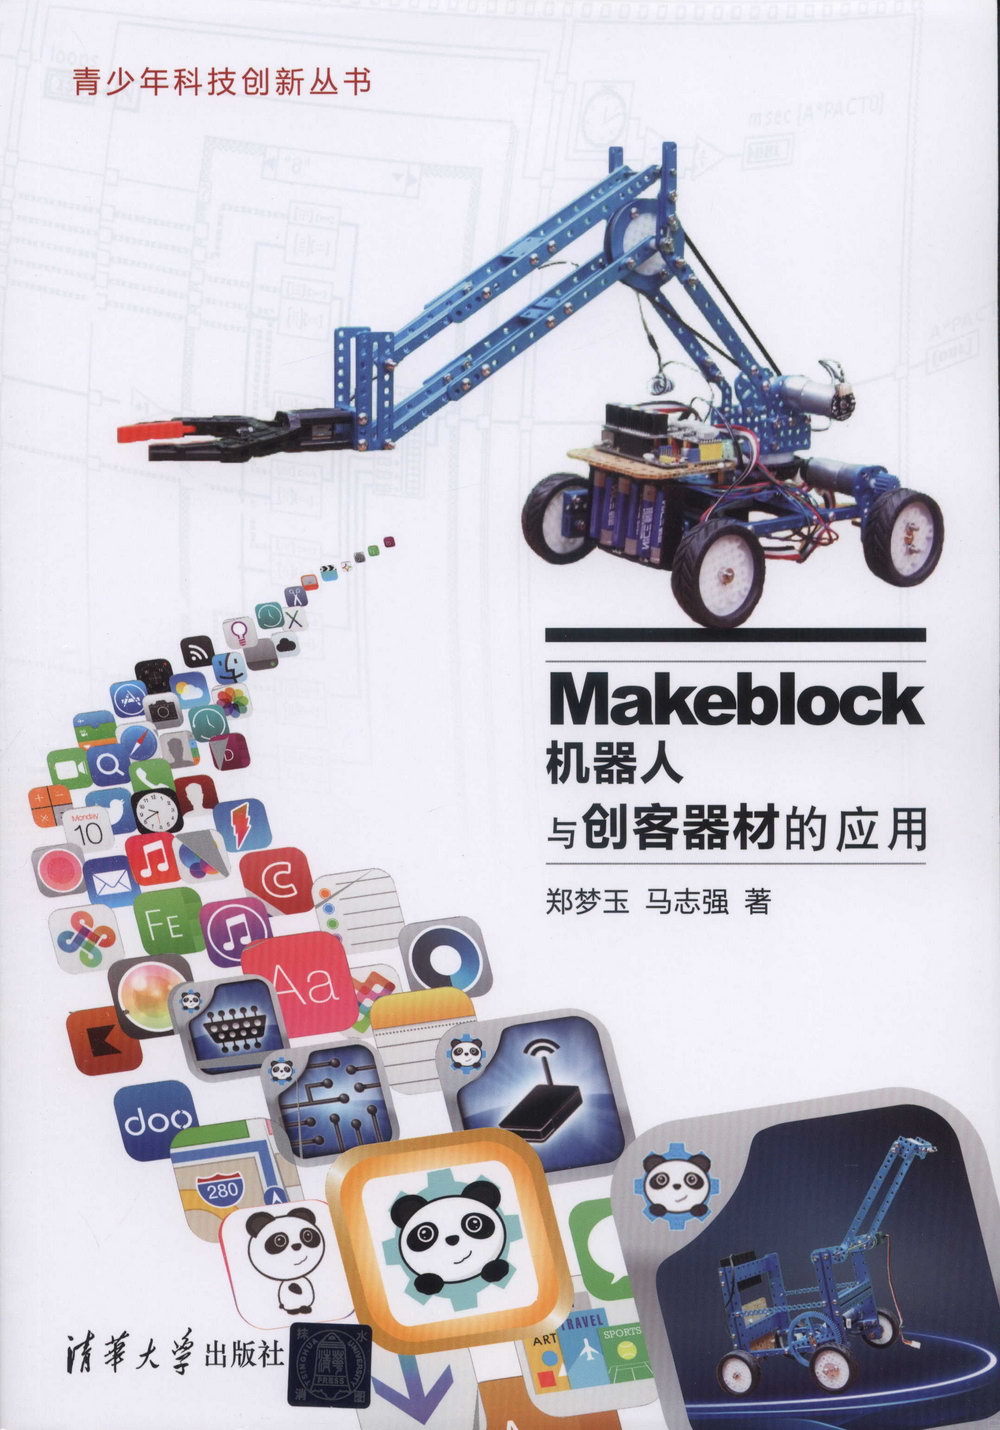 Makeblock機器人與創客器材的應用